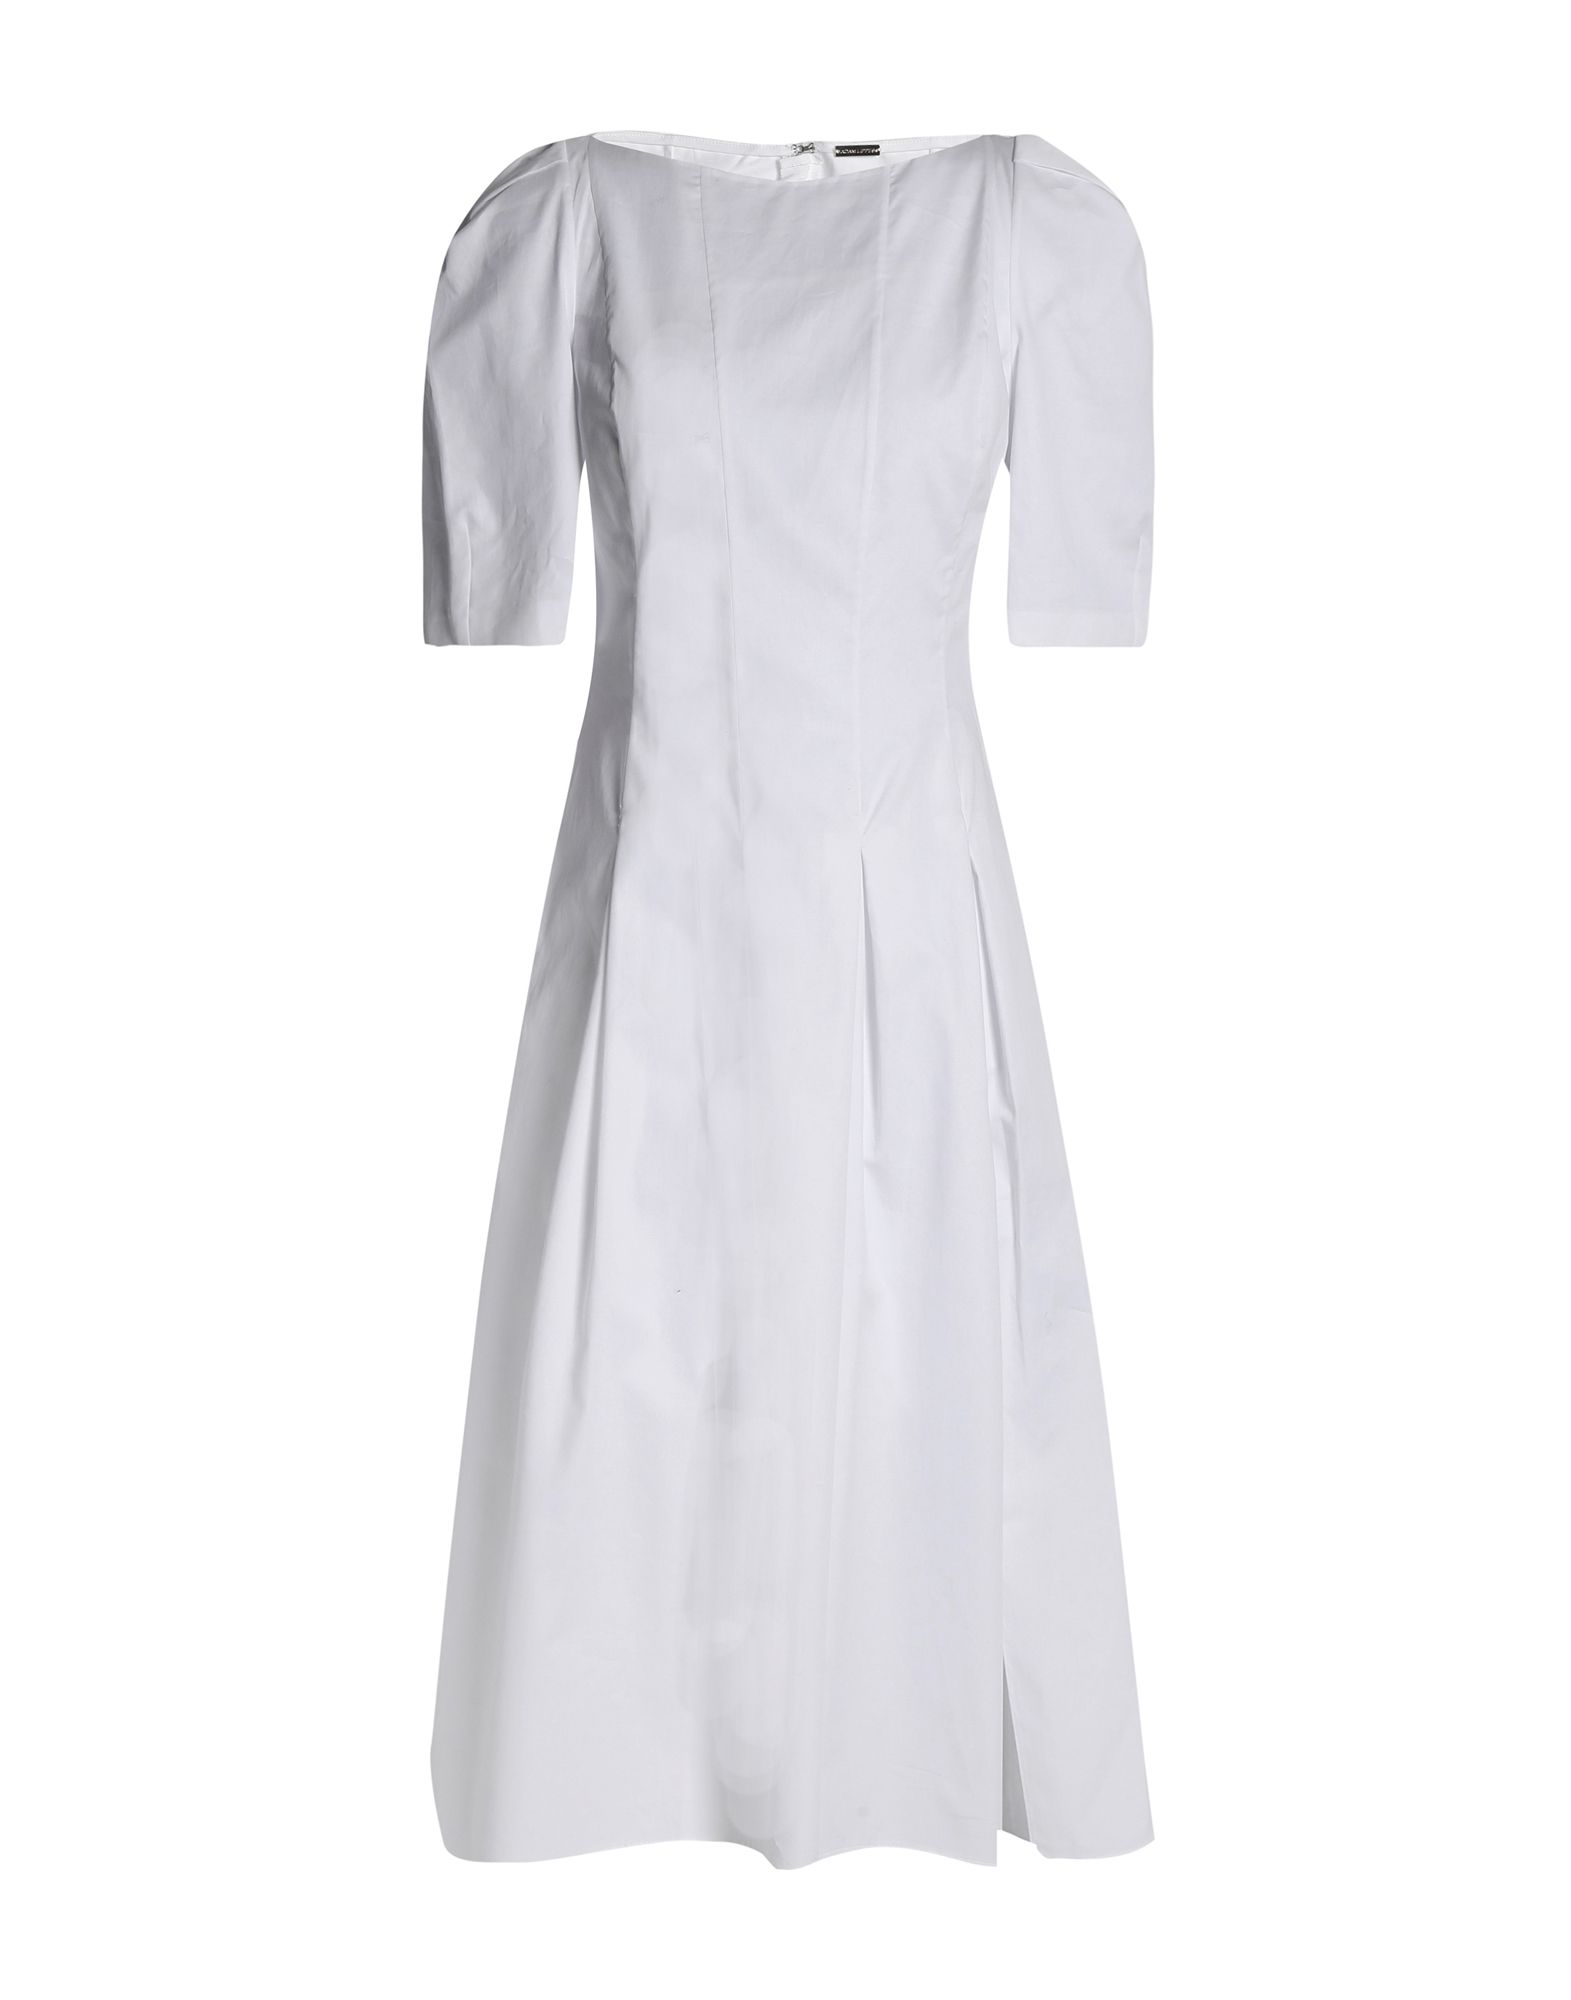 《送料無料》ADAM LIPPES レディース 7分丈ワンピース・ドレス ホワイト 2 コットン 100%